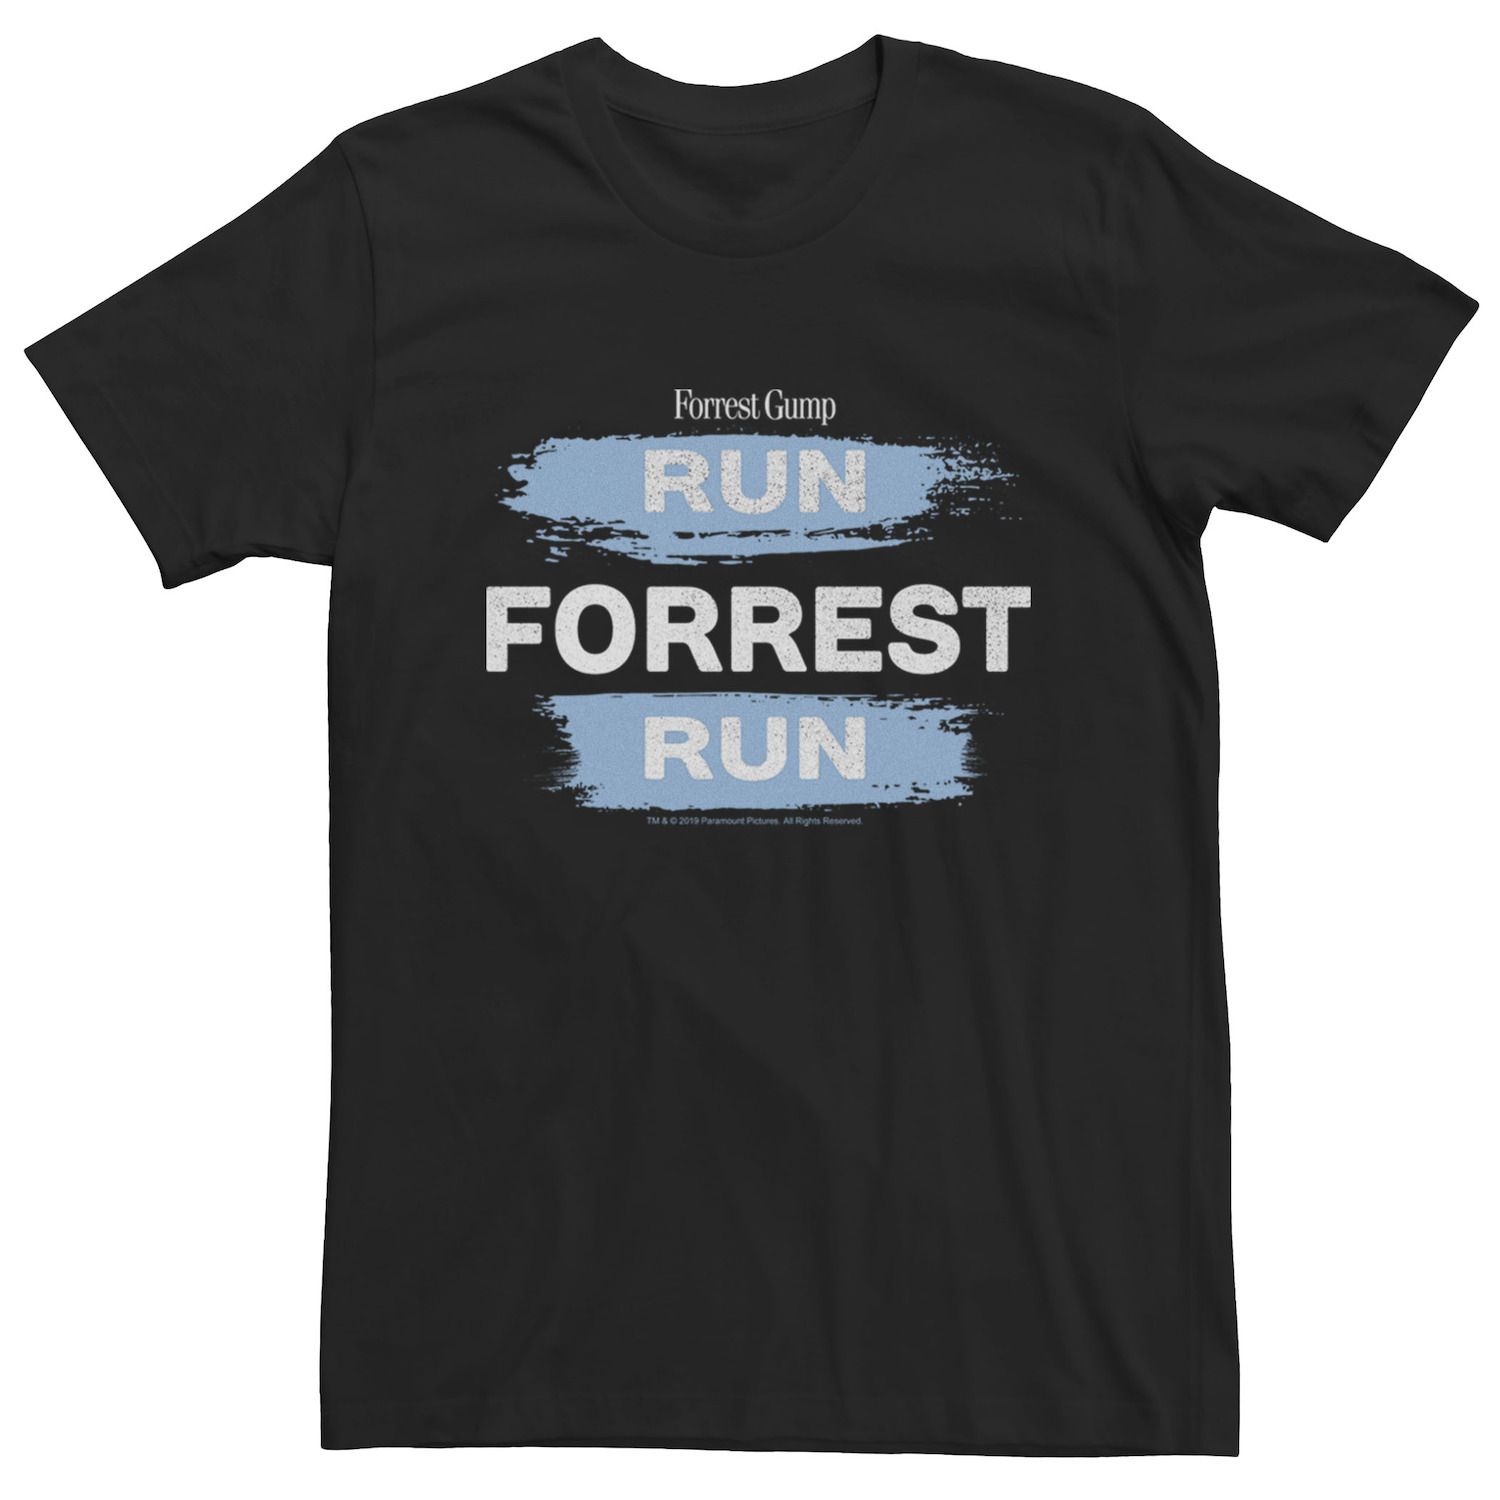 Мужская футболка Forrest Gump Run Forrest Run Paint Swipe Licensed Character цена и фото